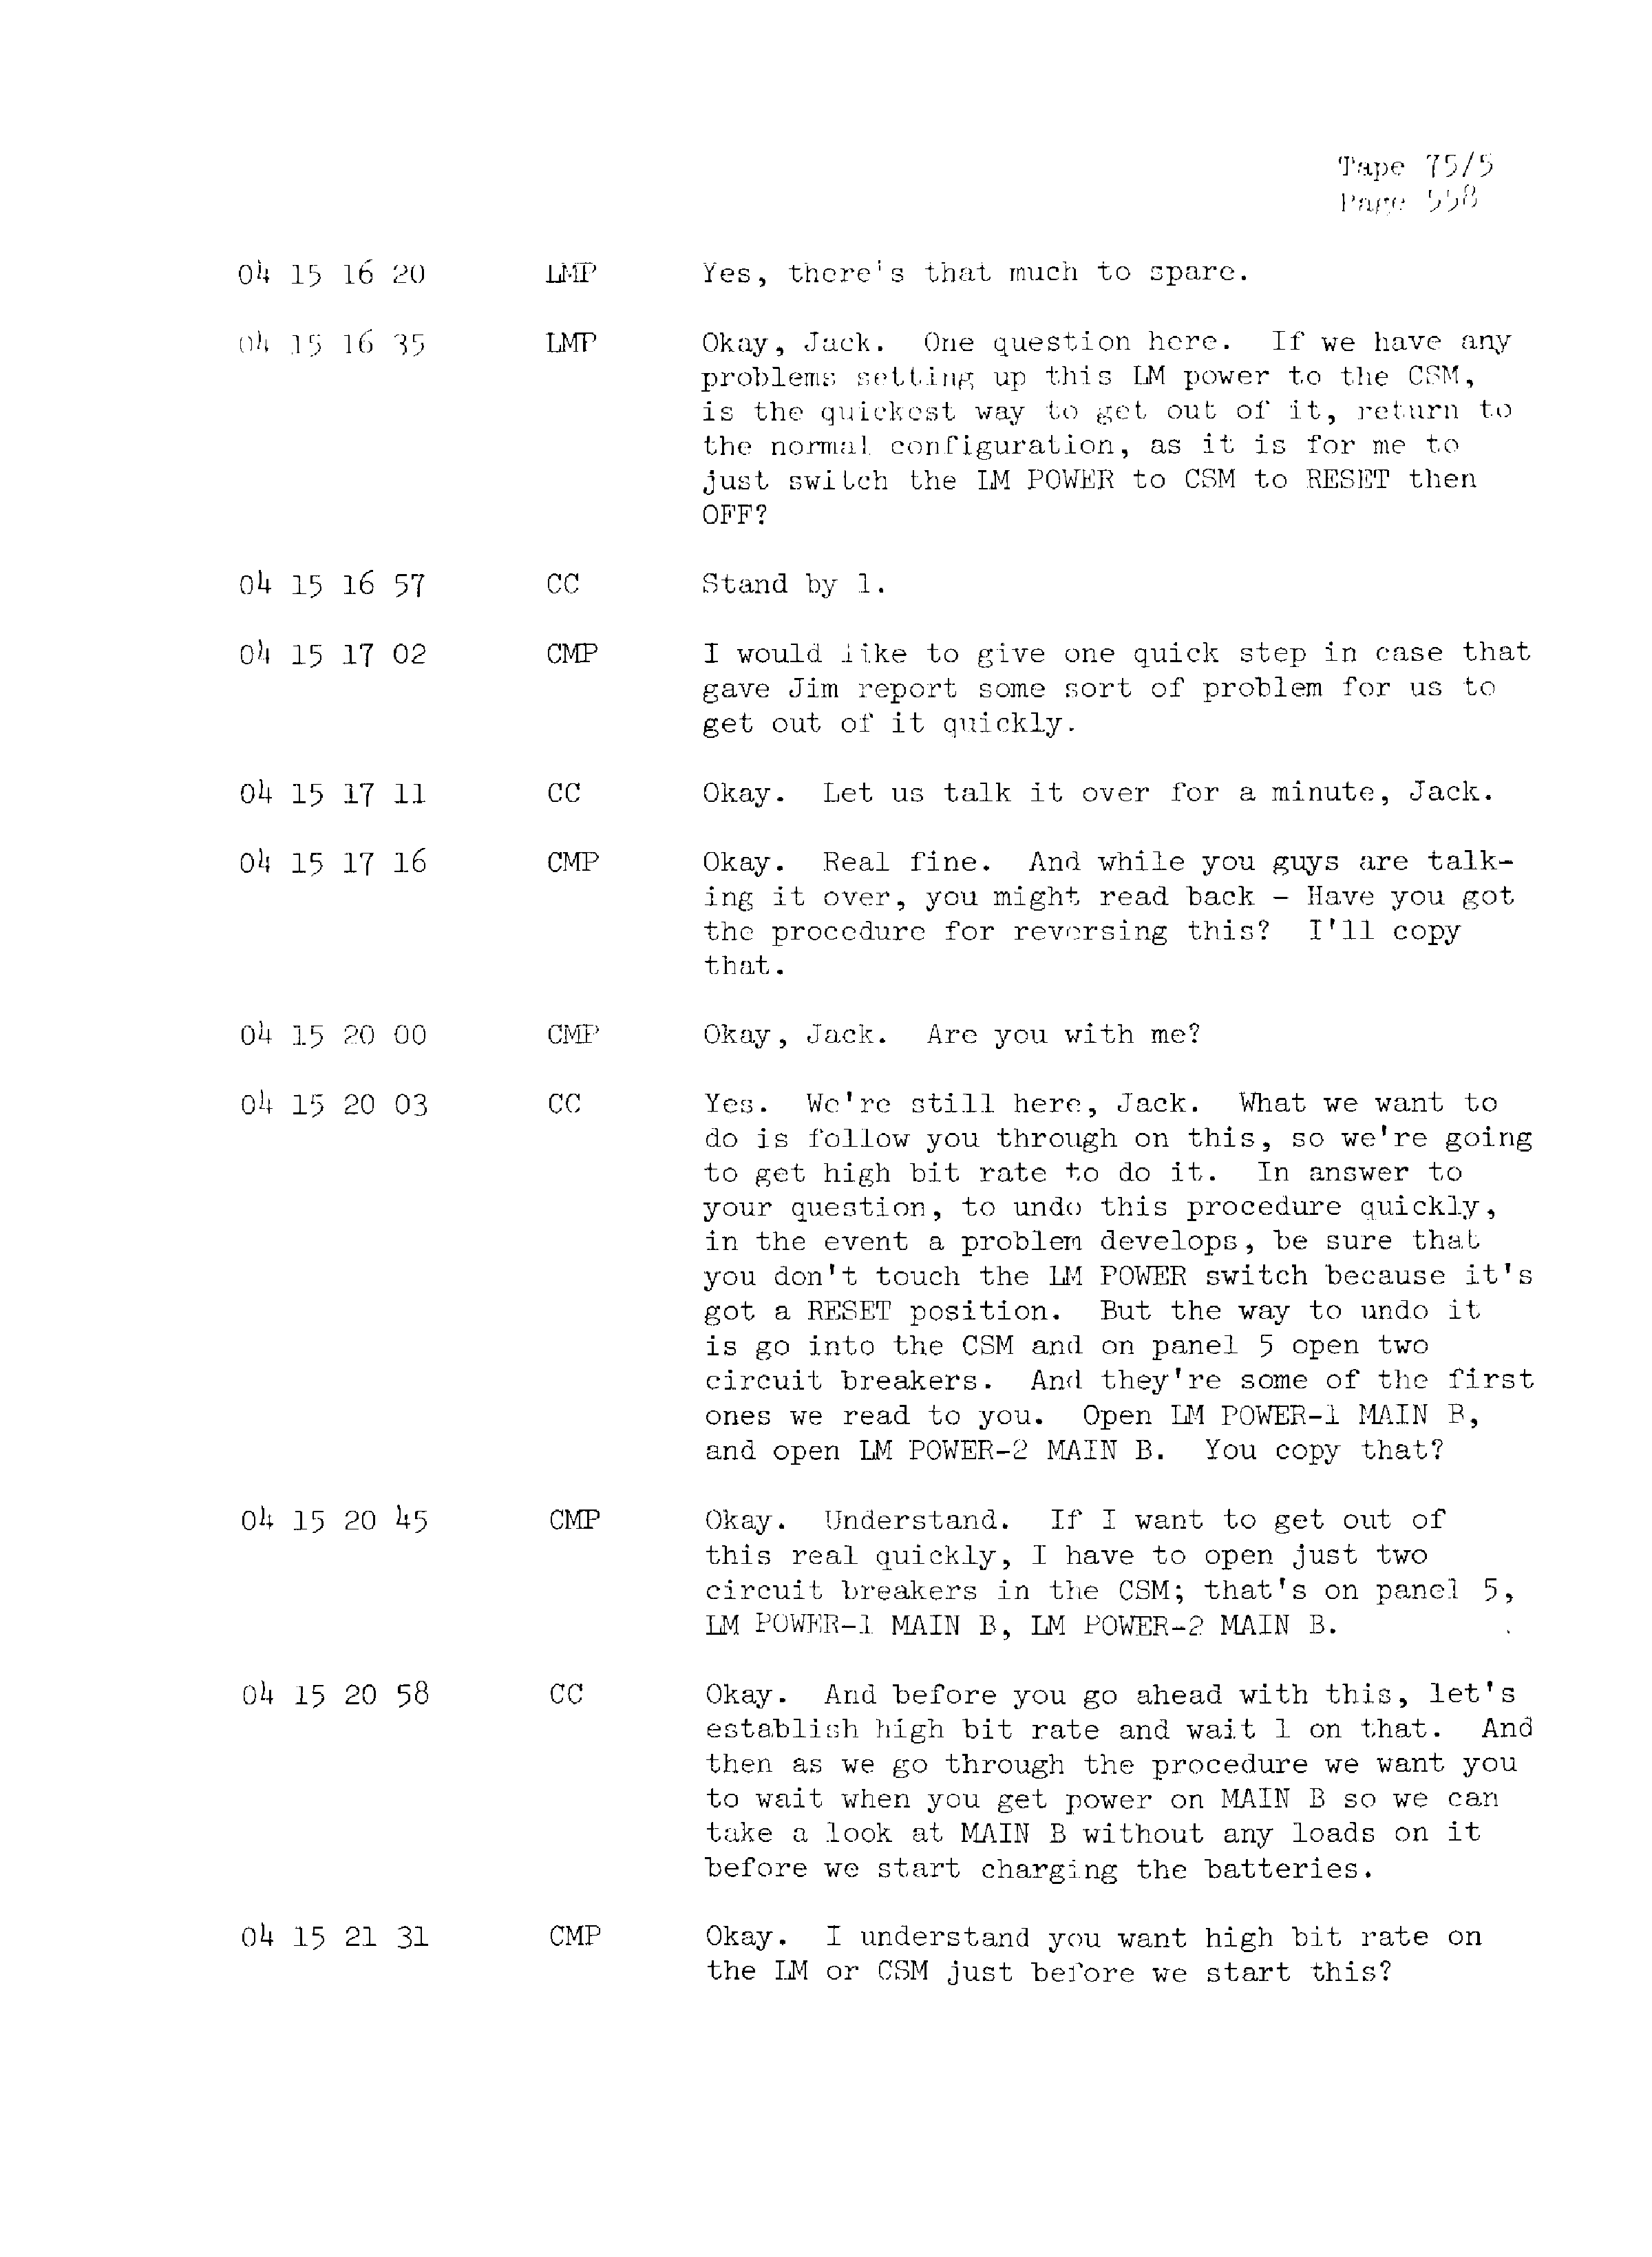 Page 565 of Apollo 13’s original transcript